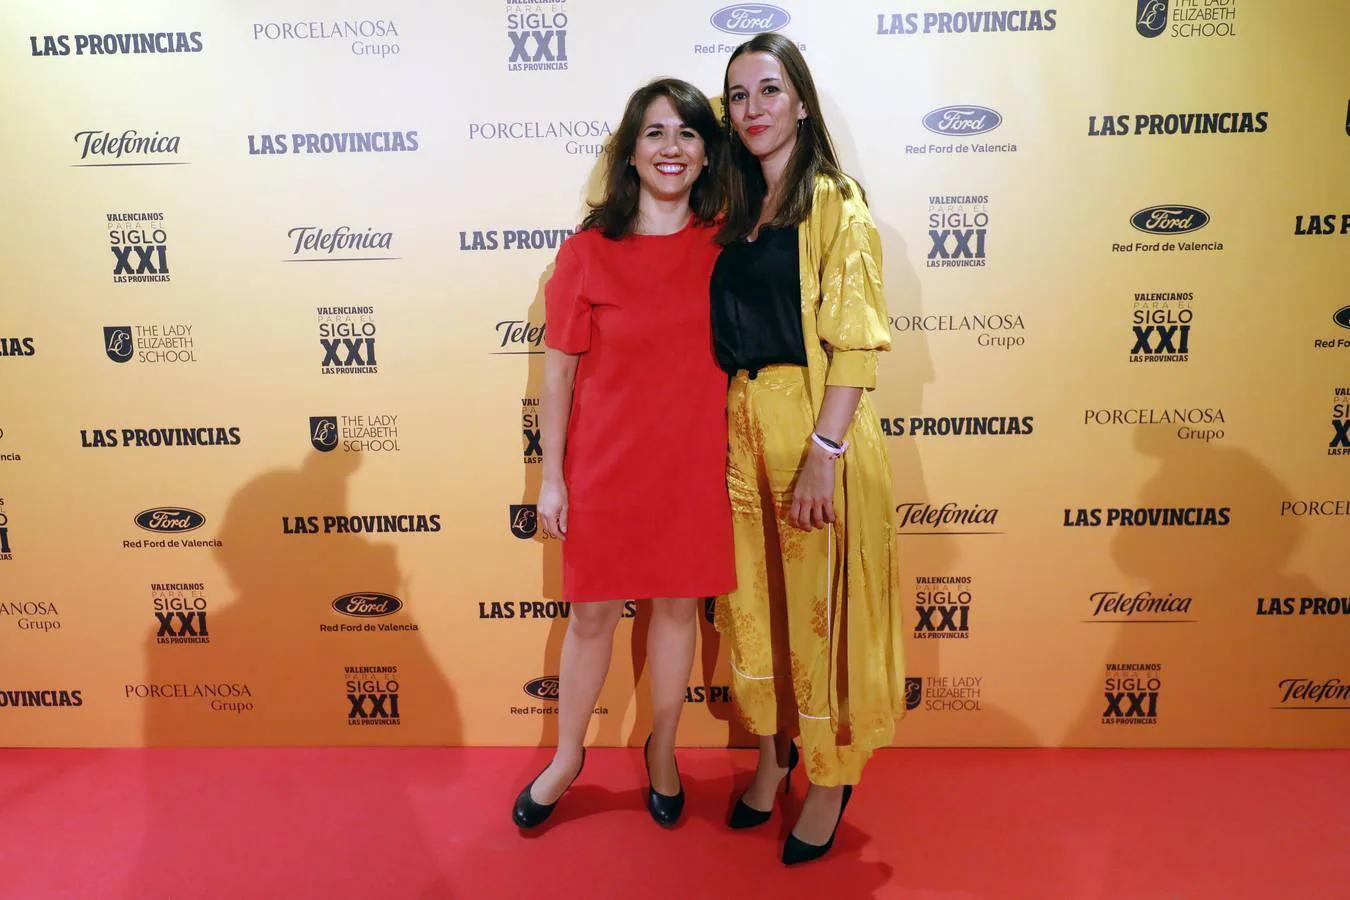 La directora general de Patrimonio, Isa Castelló, junto a Marta Hortelano, redactora de LAS PROVINCIAS.